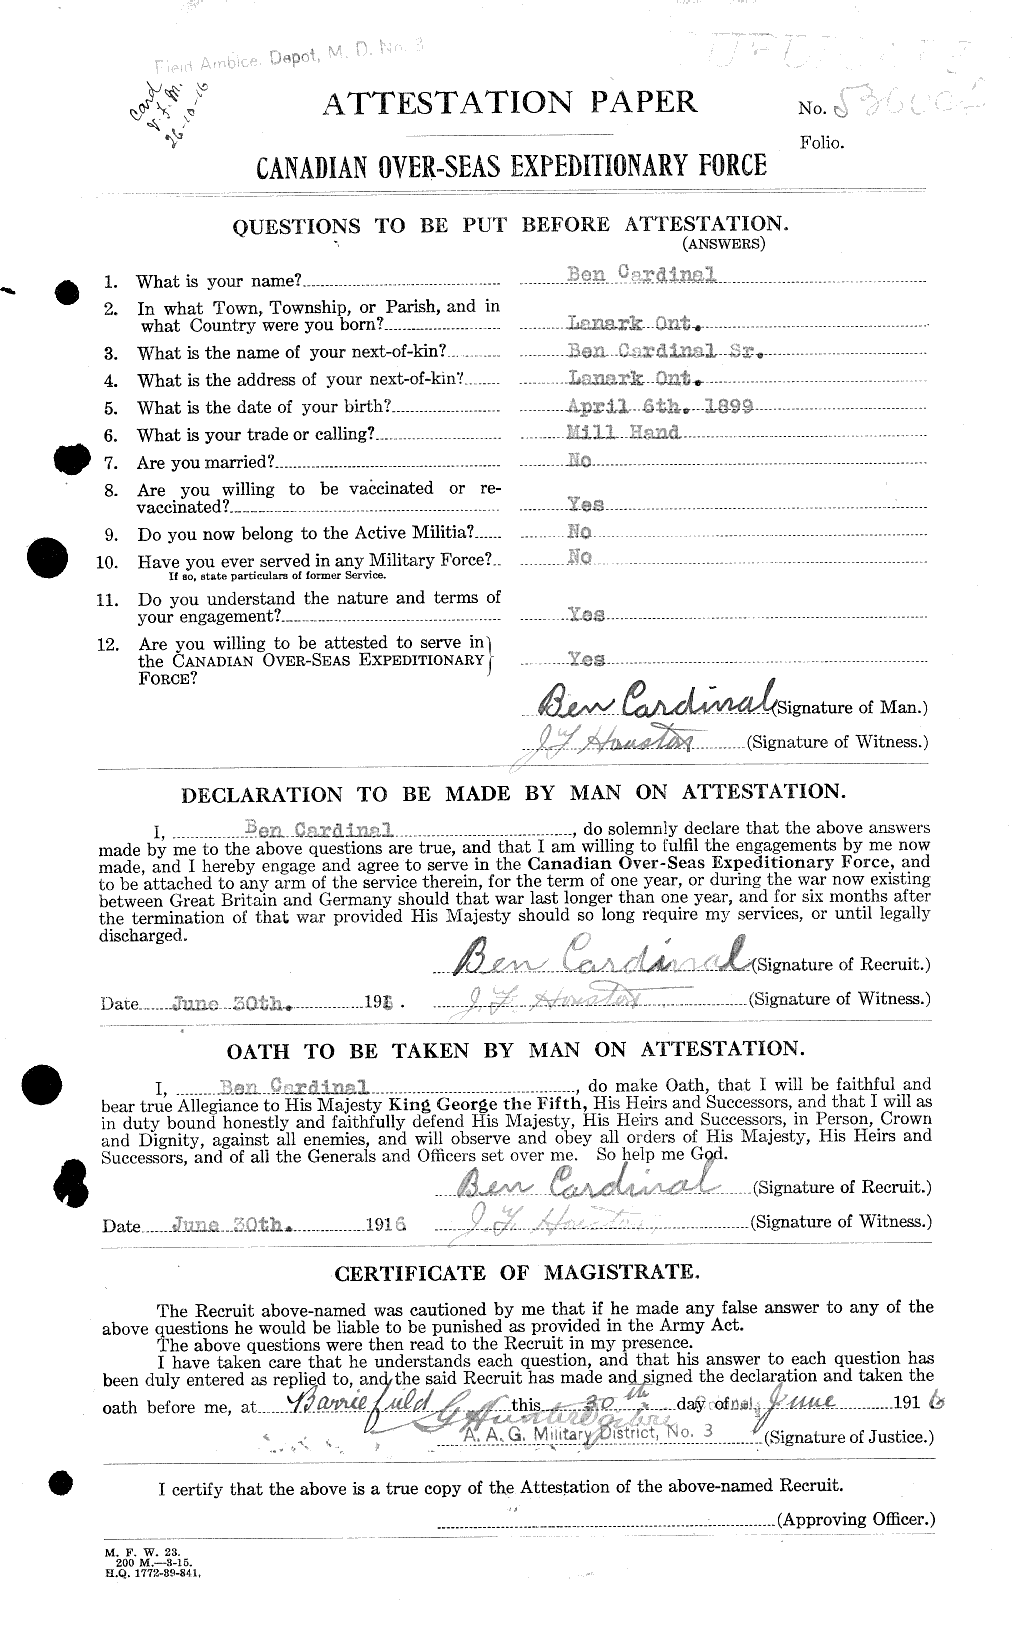 Dossiers du Personnel de la Première Guerre mondiale - CEC 003179a